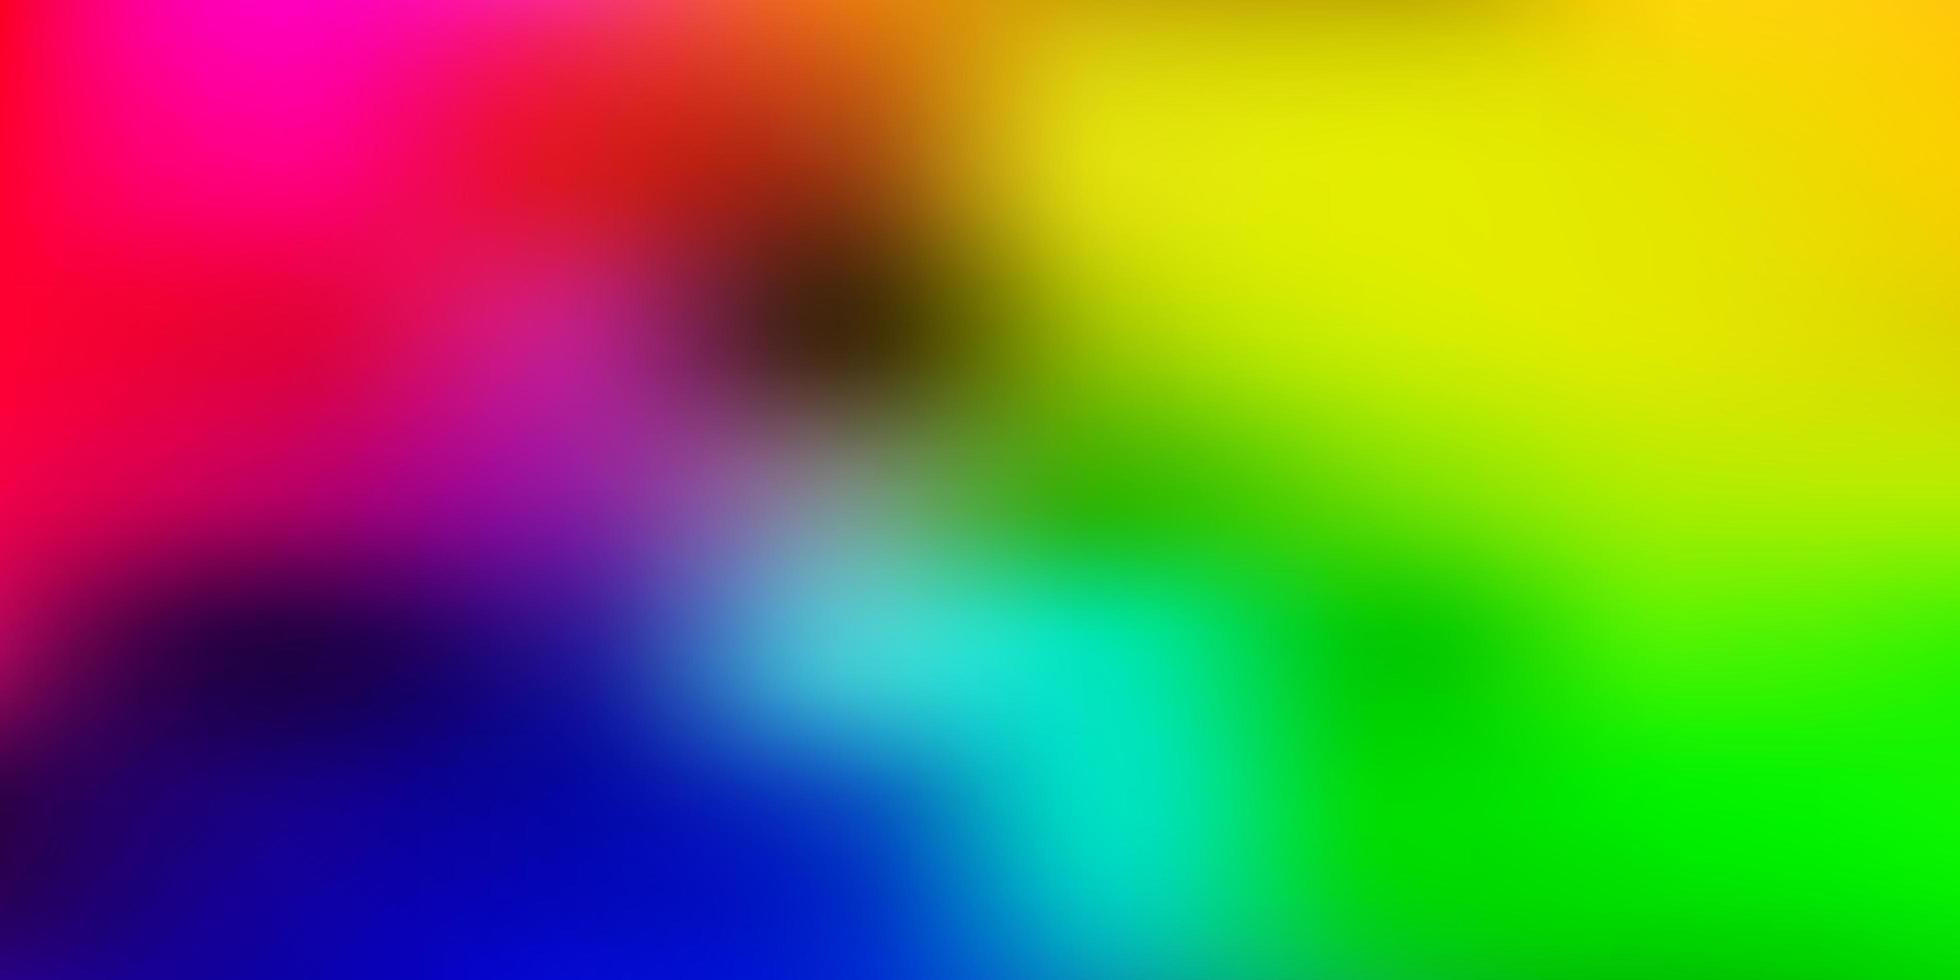 sfondo sfocato vettoriale multicolore chiaro.